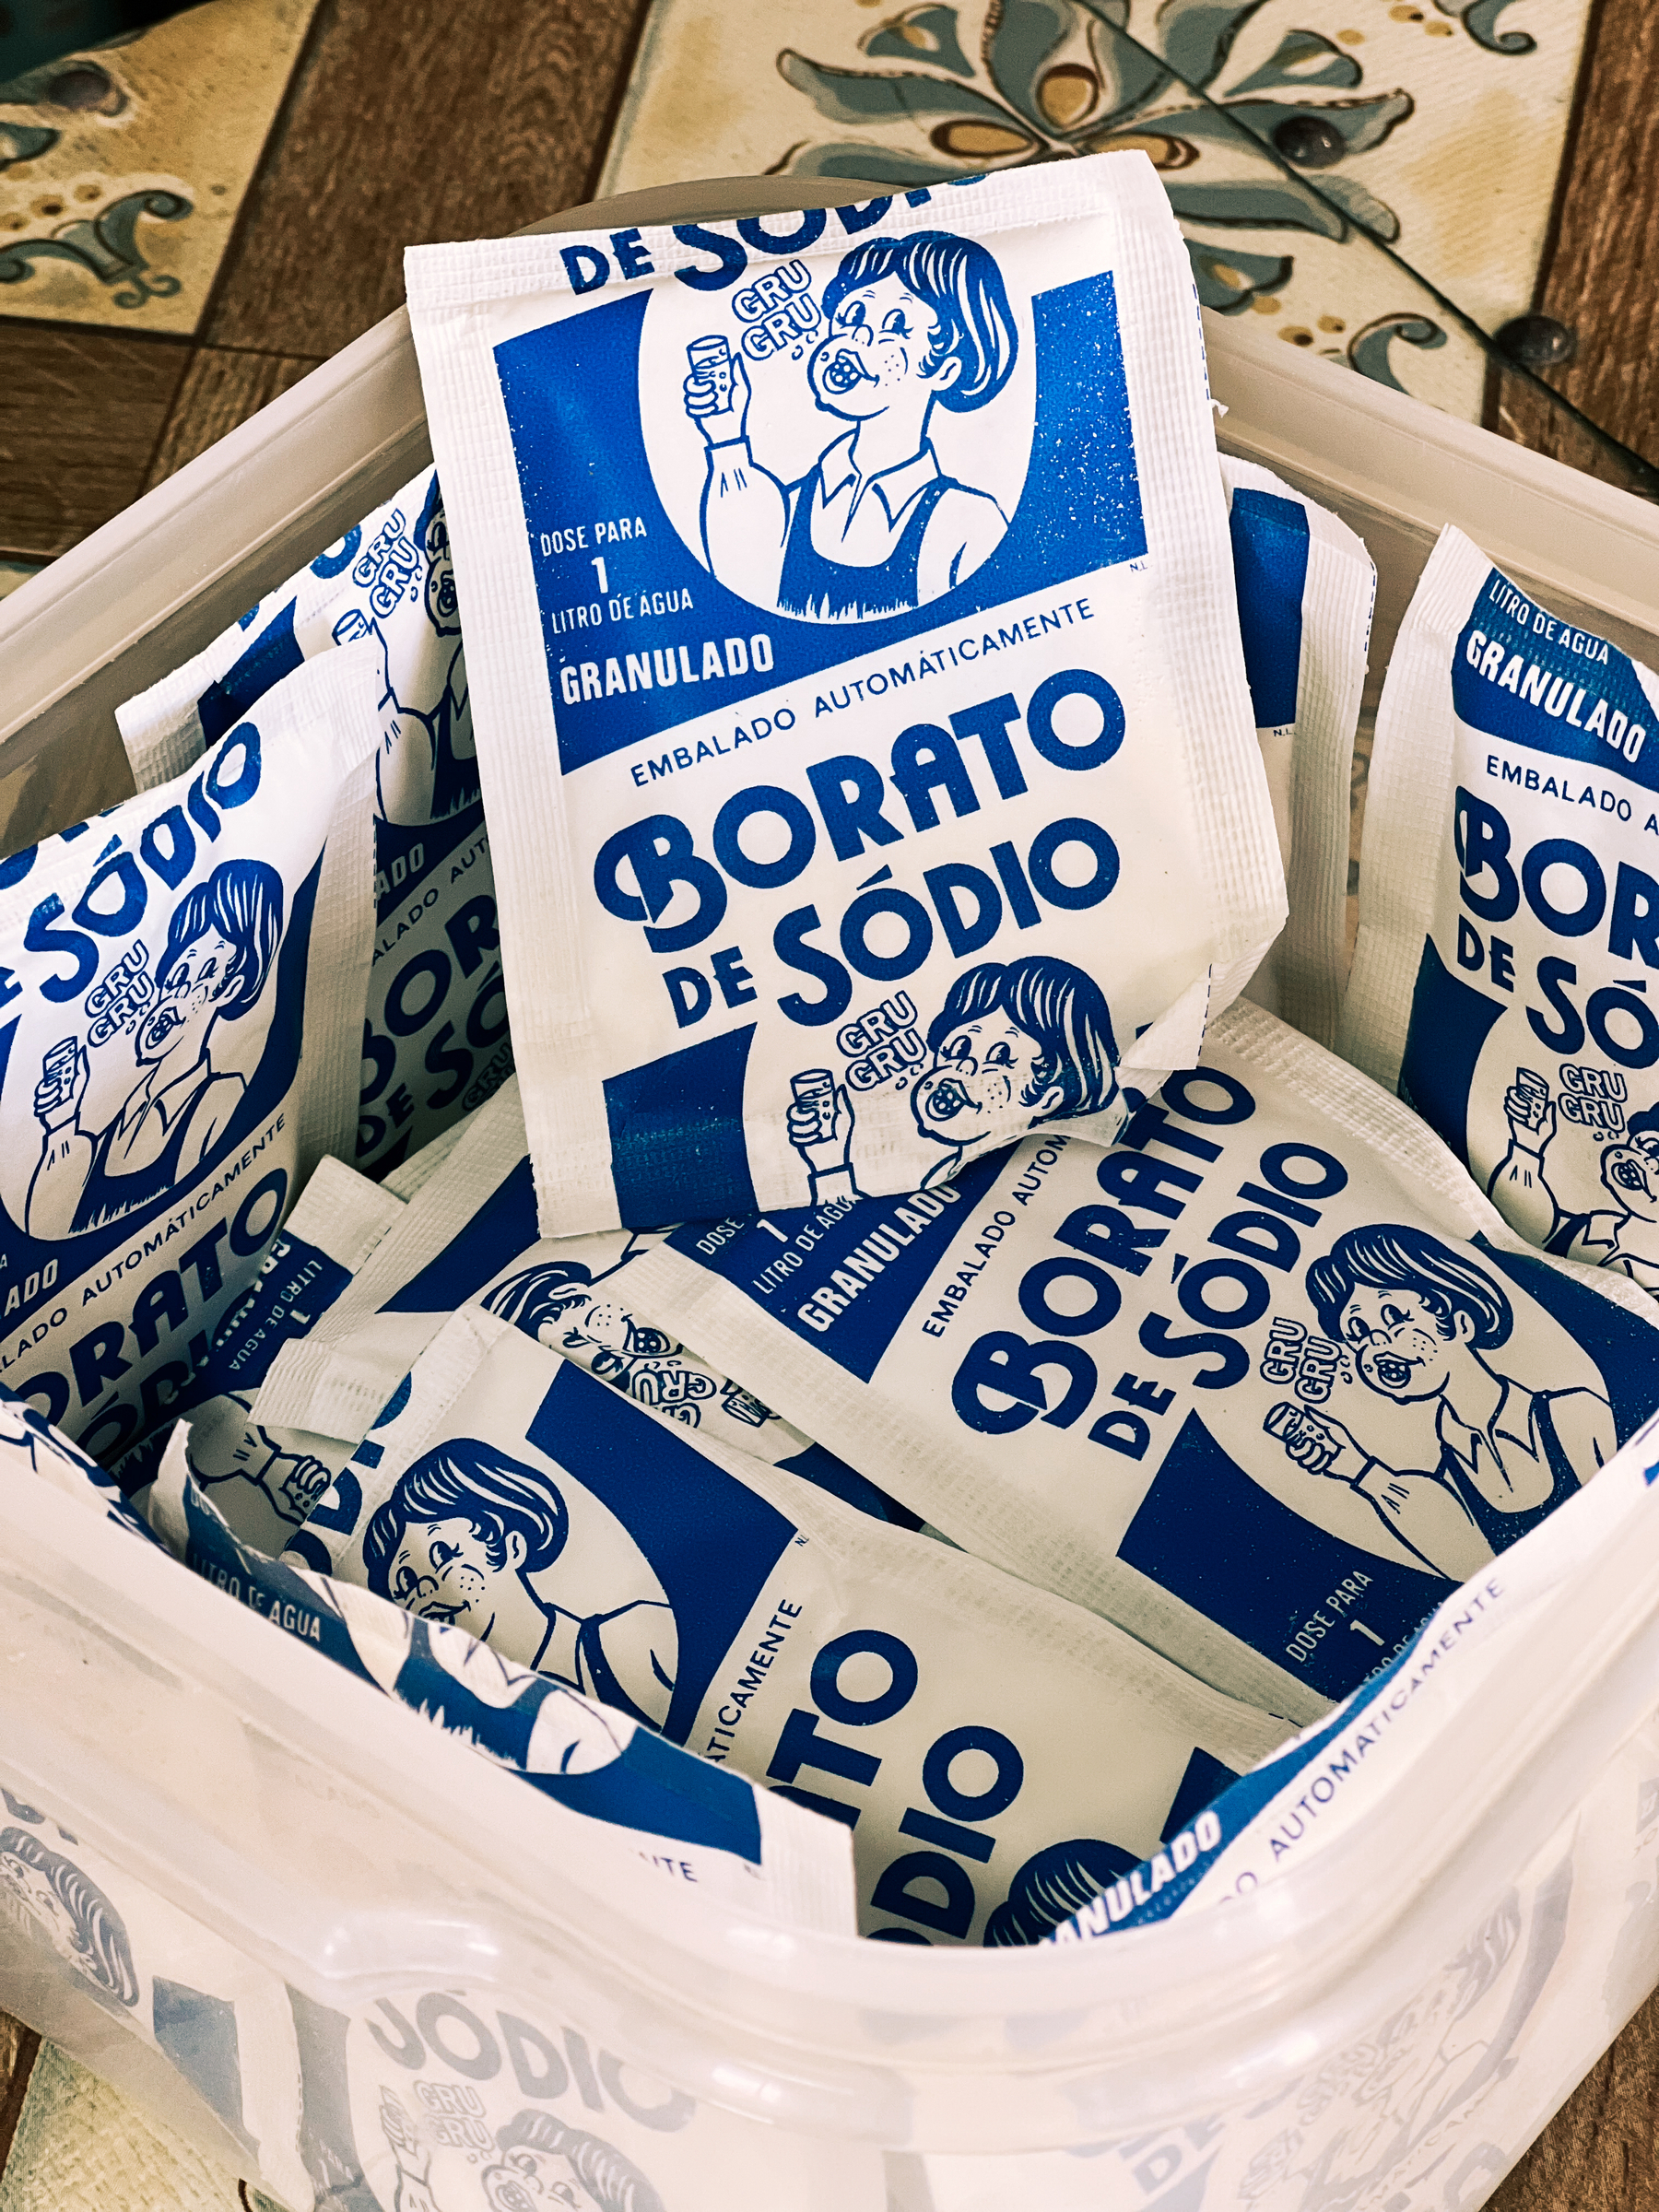 Packs of “Borato de Sódio”. Vintage. 